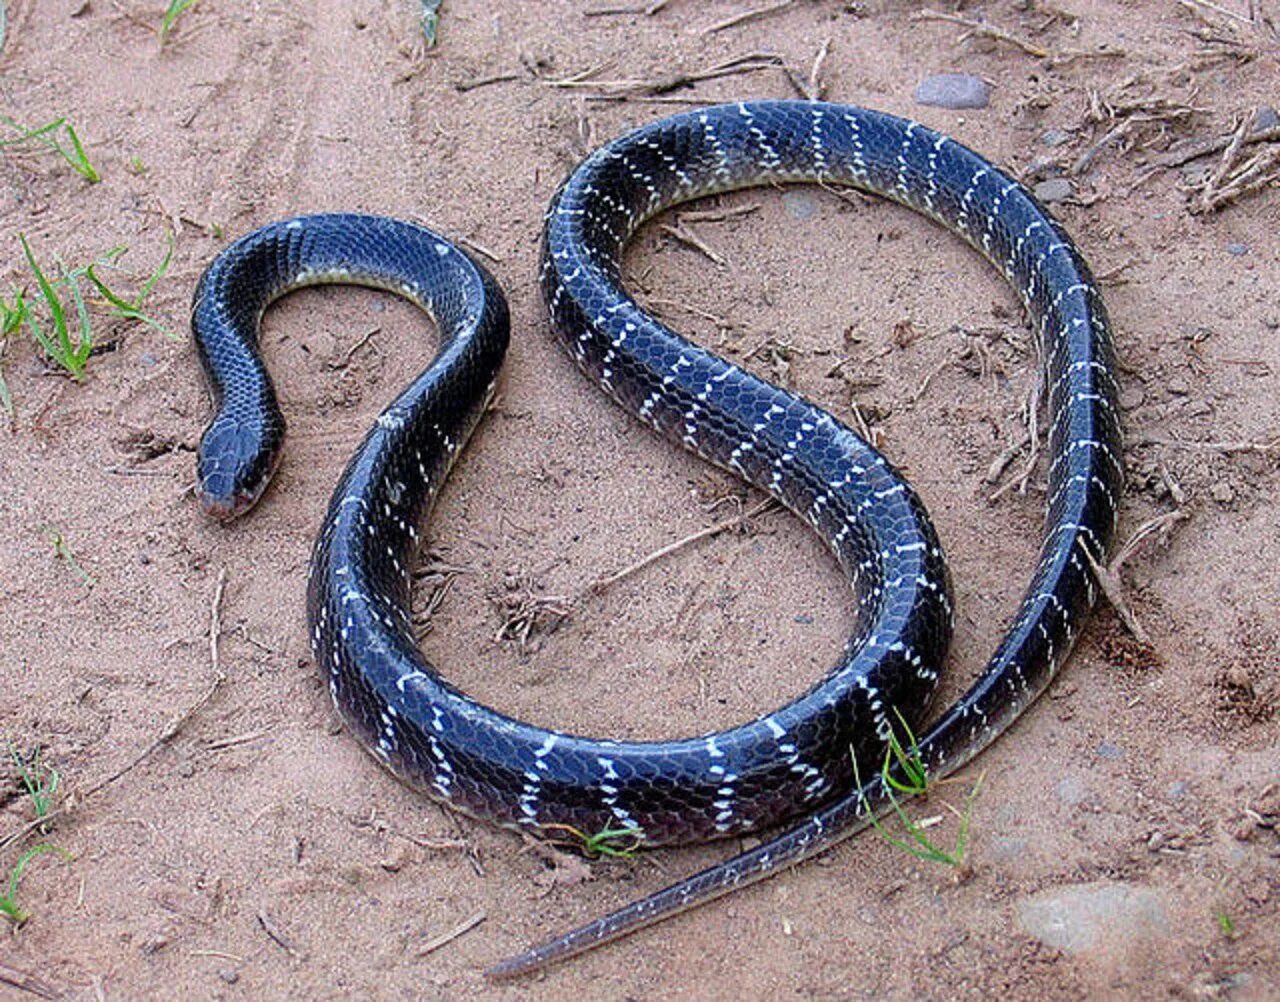 Snakes are dangerous. Малайский Крайт змея. Ленточный Крайт змея. Малайский синий Крайт. Синий Крайт змея.